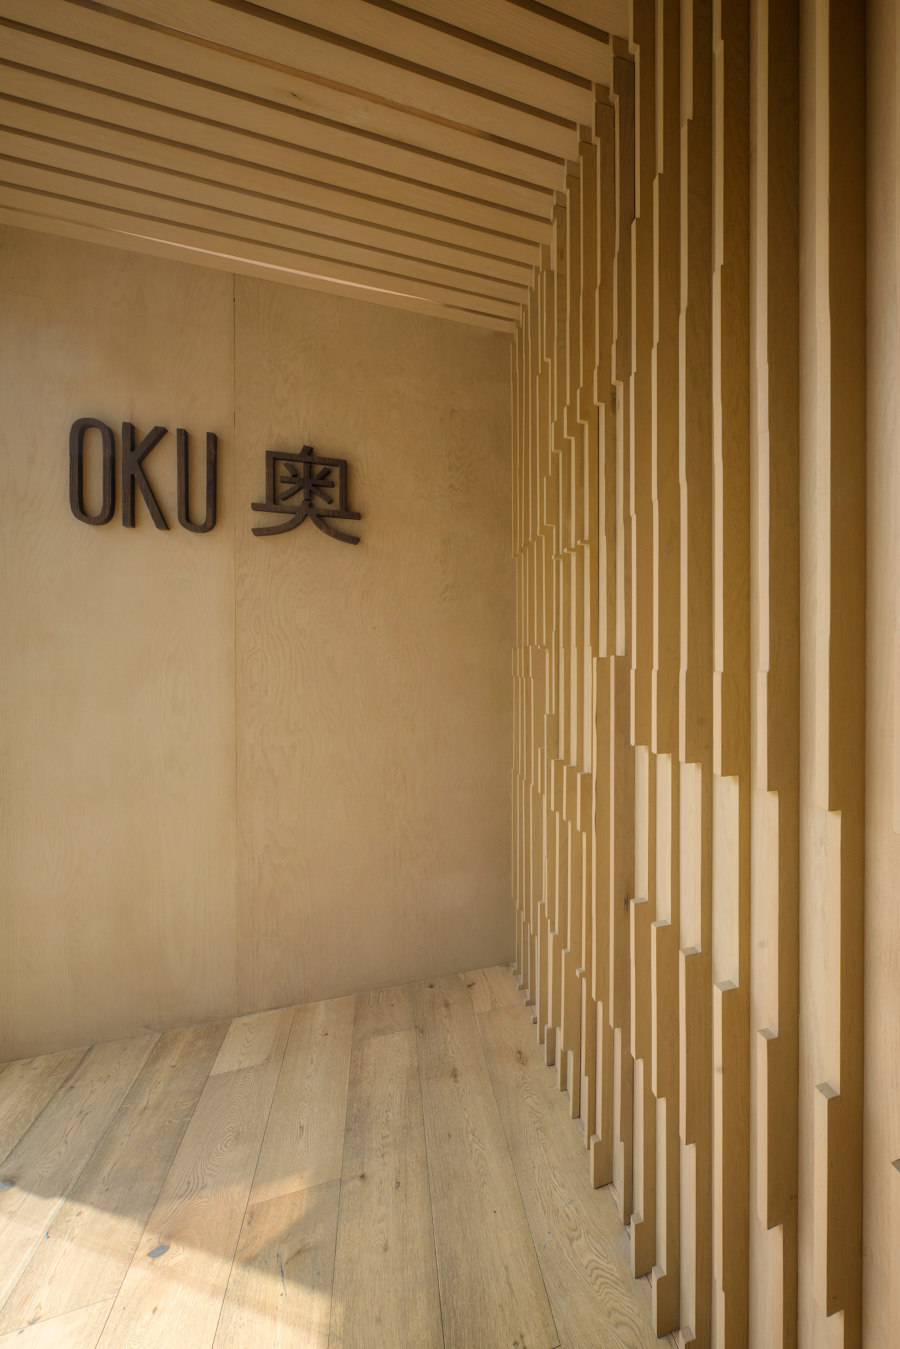 Oku Restaurant de Michan Architecture | Intérieurs de restaurant